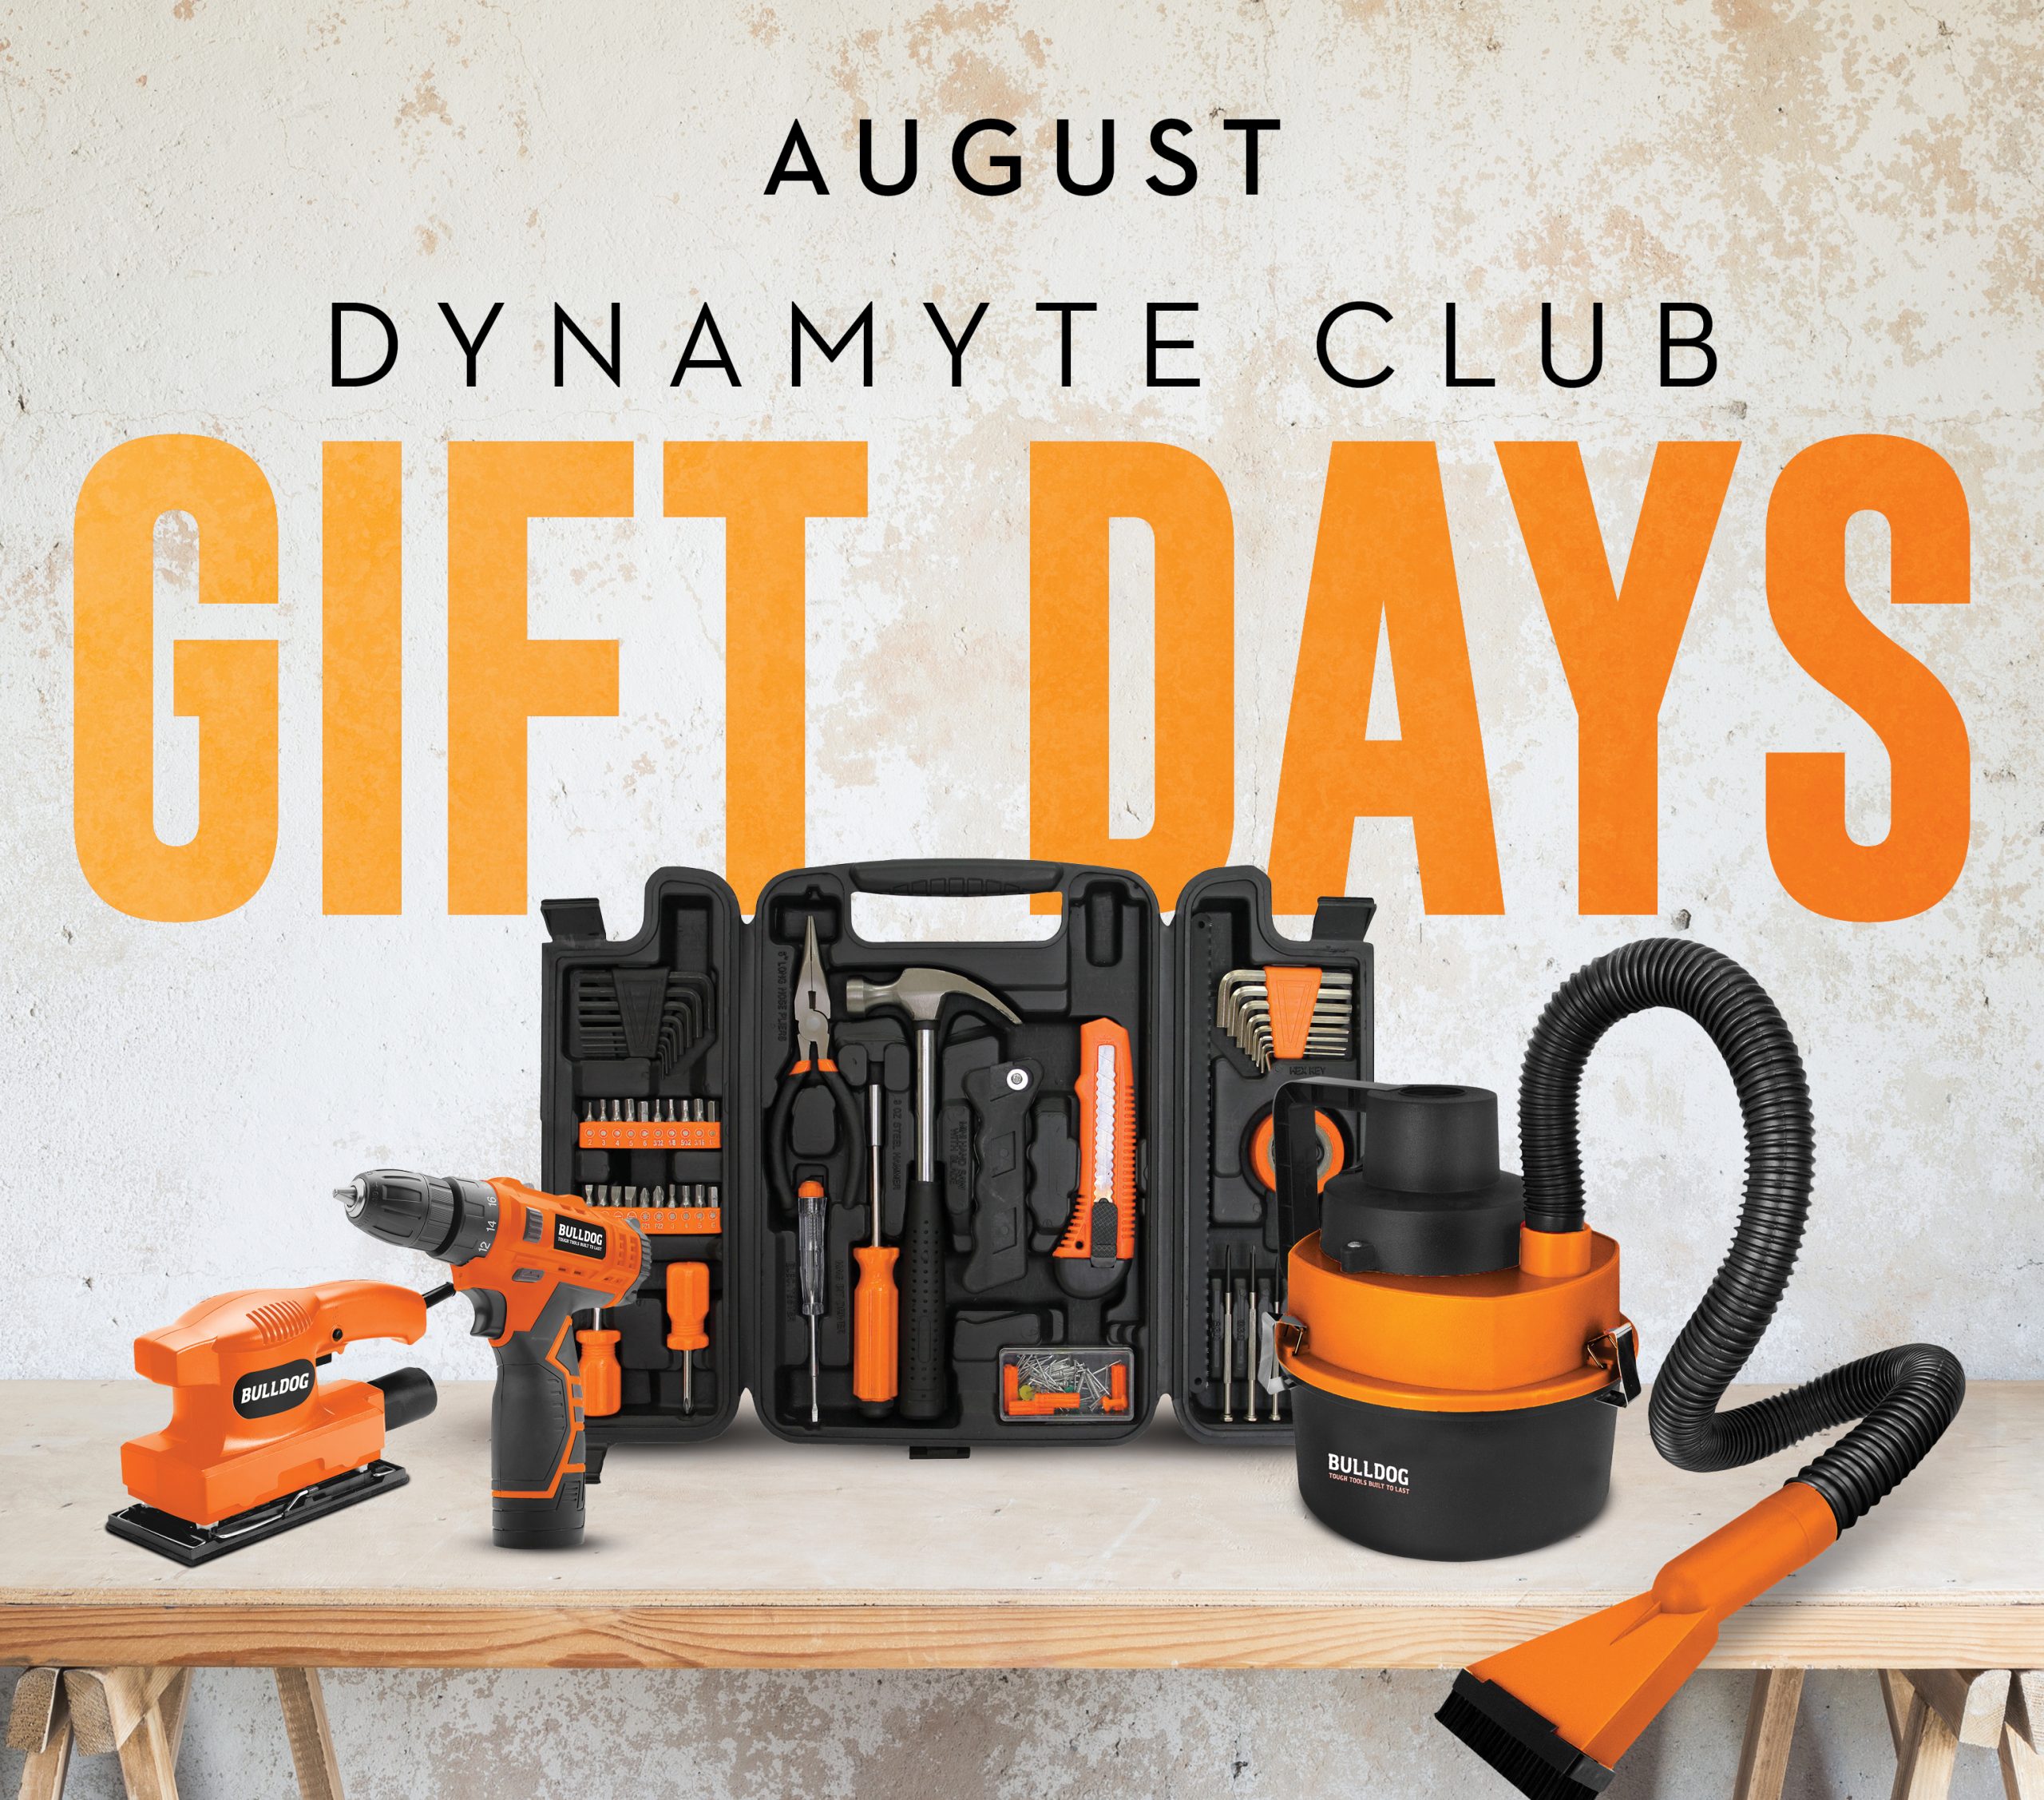 Dynamyte Club Gift Days - August